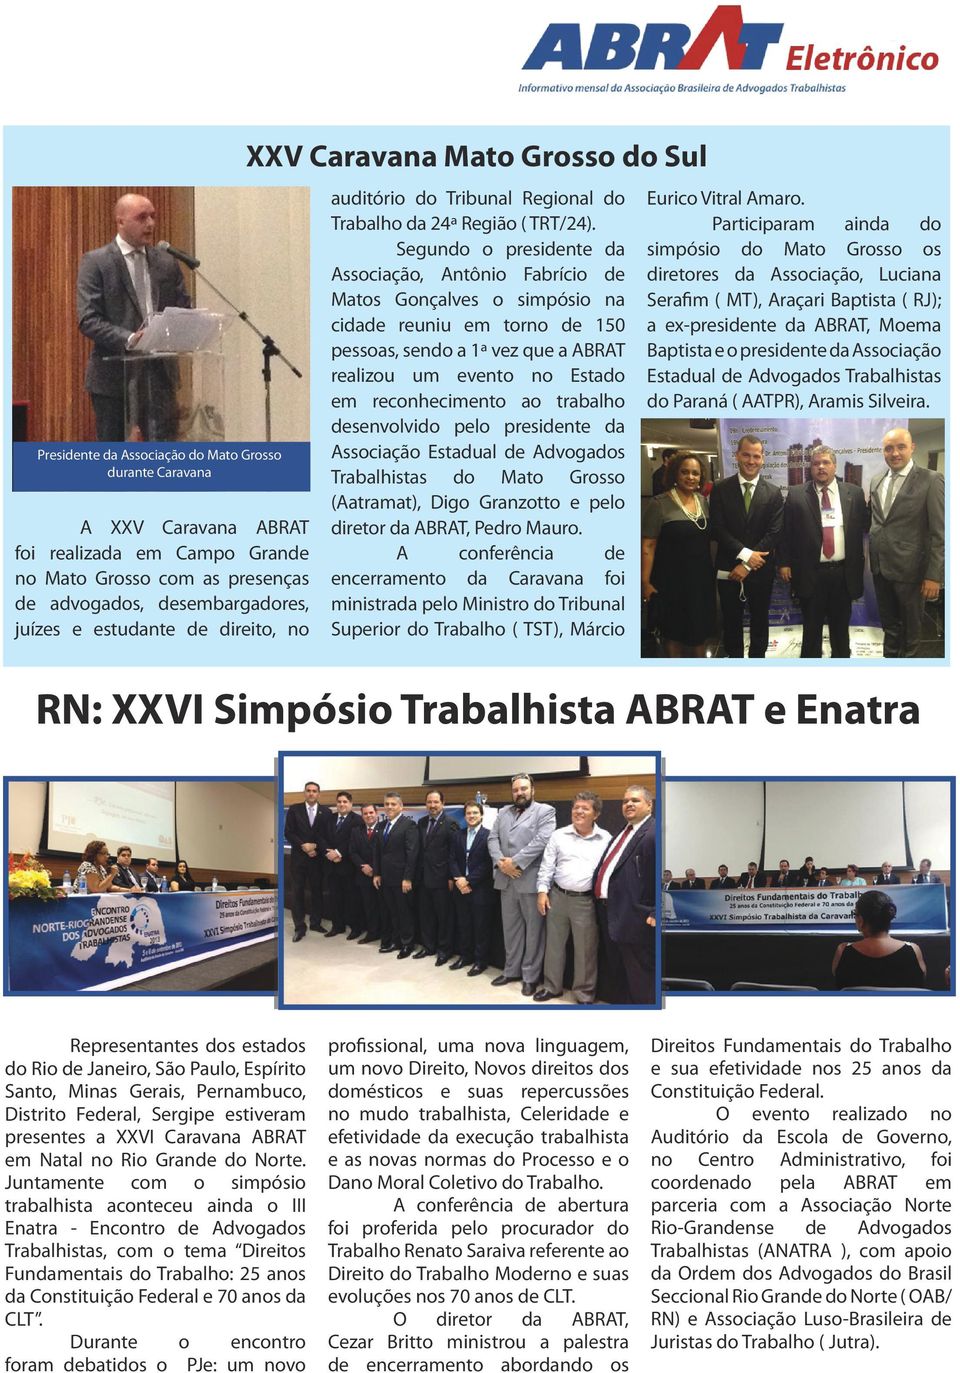 Segundo o presidente da Associação, Antônio Fabrício de Matos Gonçalves o simpósio na cidade reuniu em torno de 150 pessoas, sendo a 1ª vez que a ABRAT realizou um evento no Estado em reconhecimento